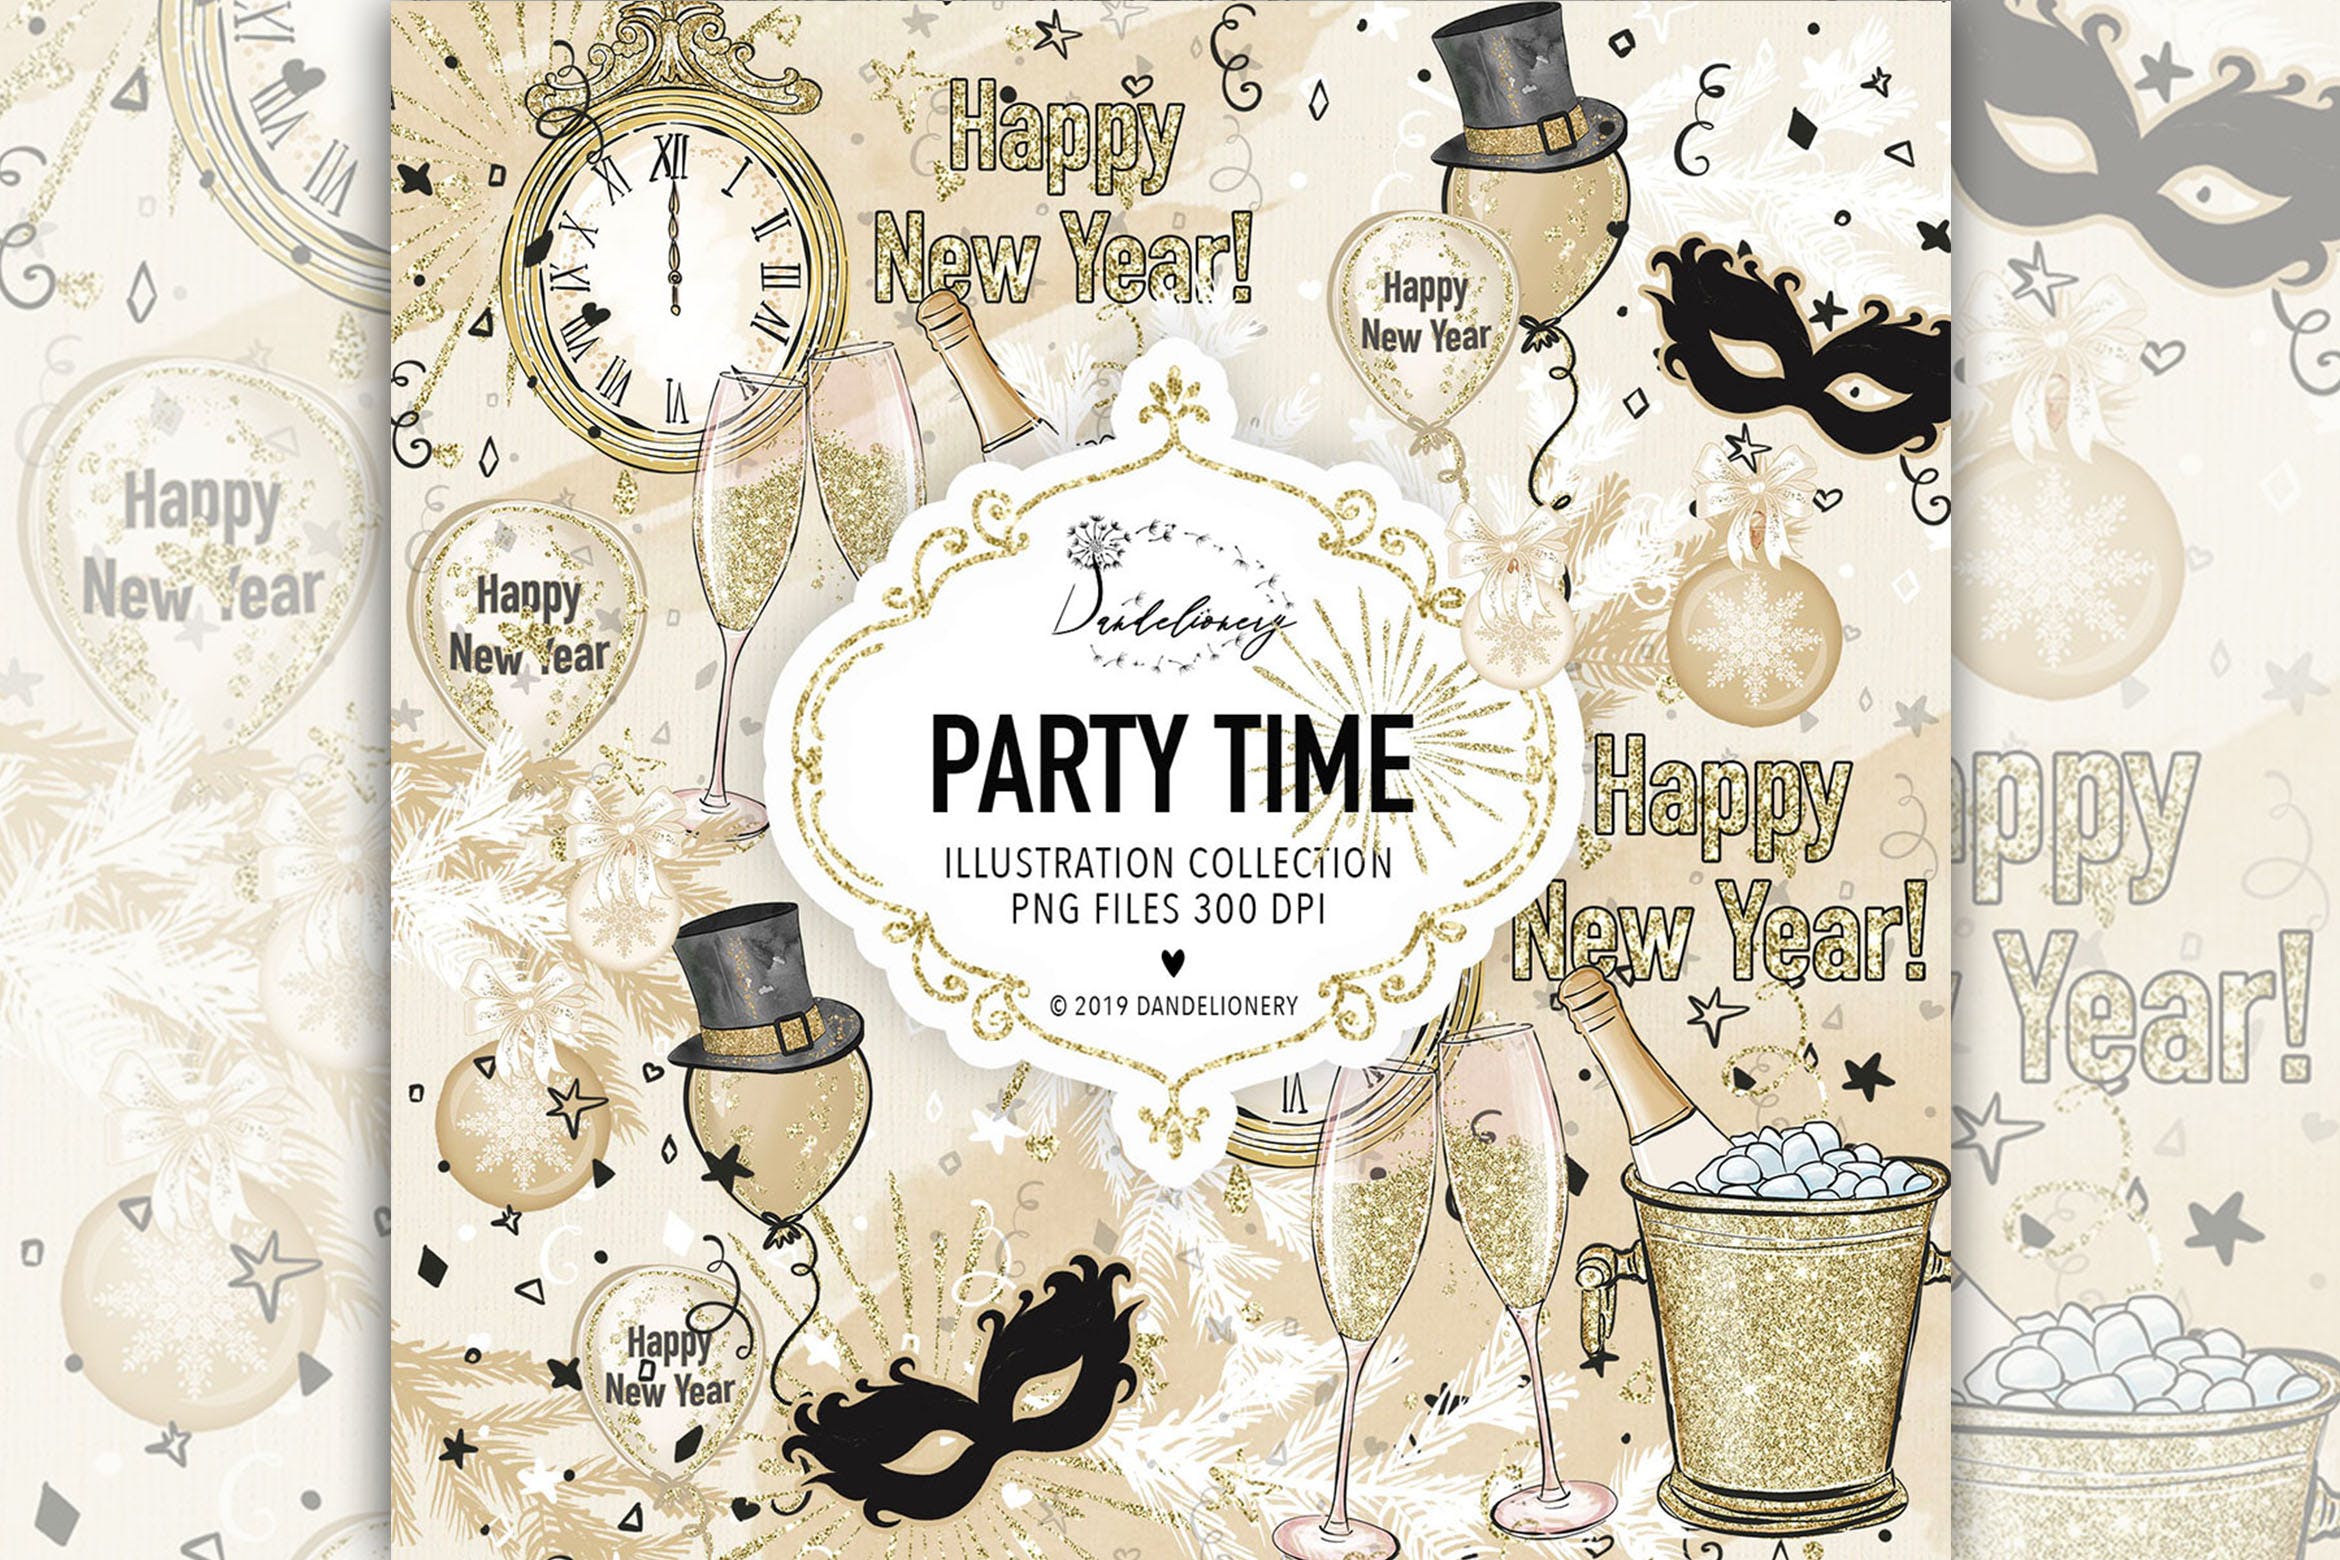 派对时光主题水彩手绘图案蚂蚁素材精选设计素材 Party Time design插图